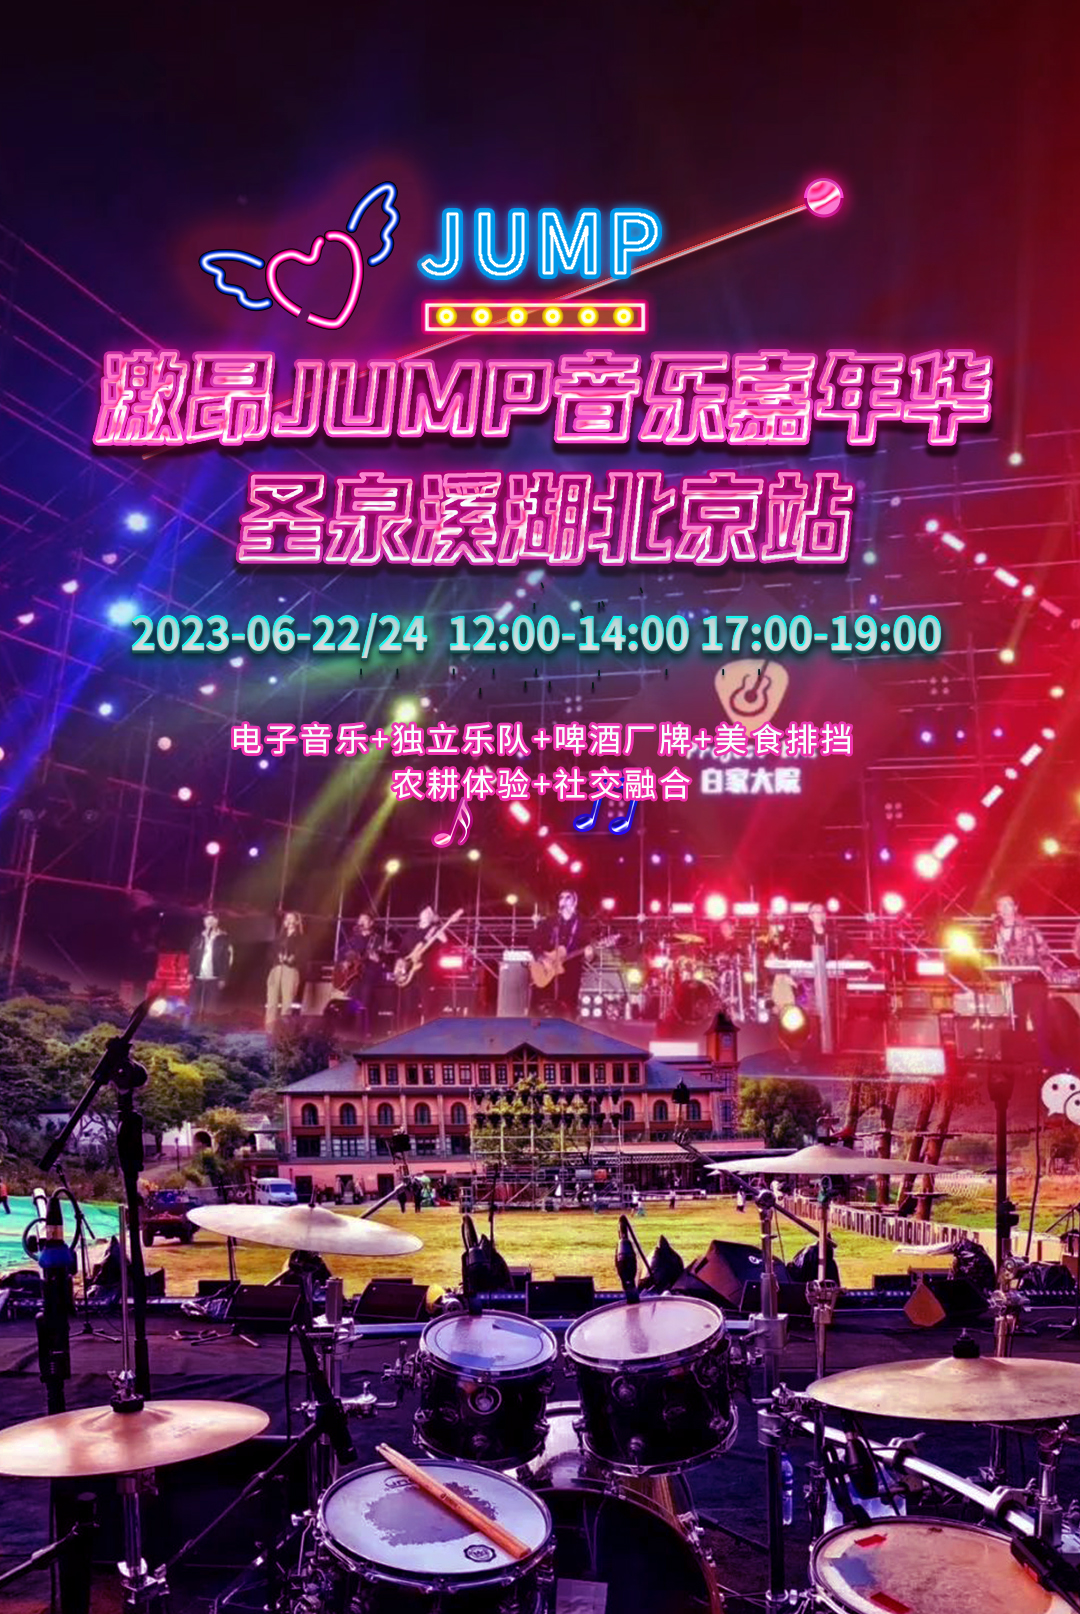 激昂JUMP音乐嘉年华·圣泉溪湖北京站